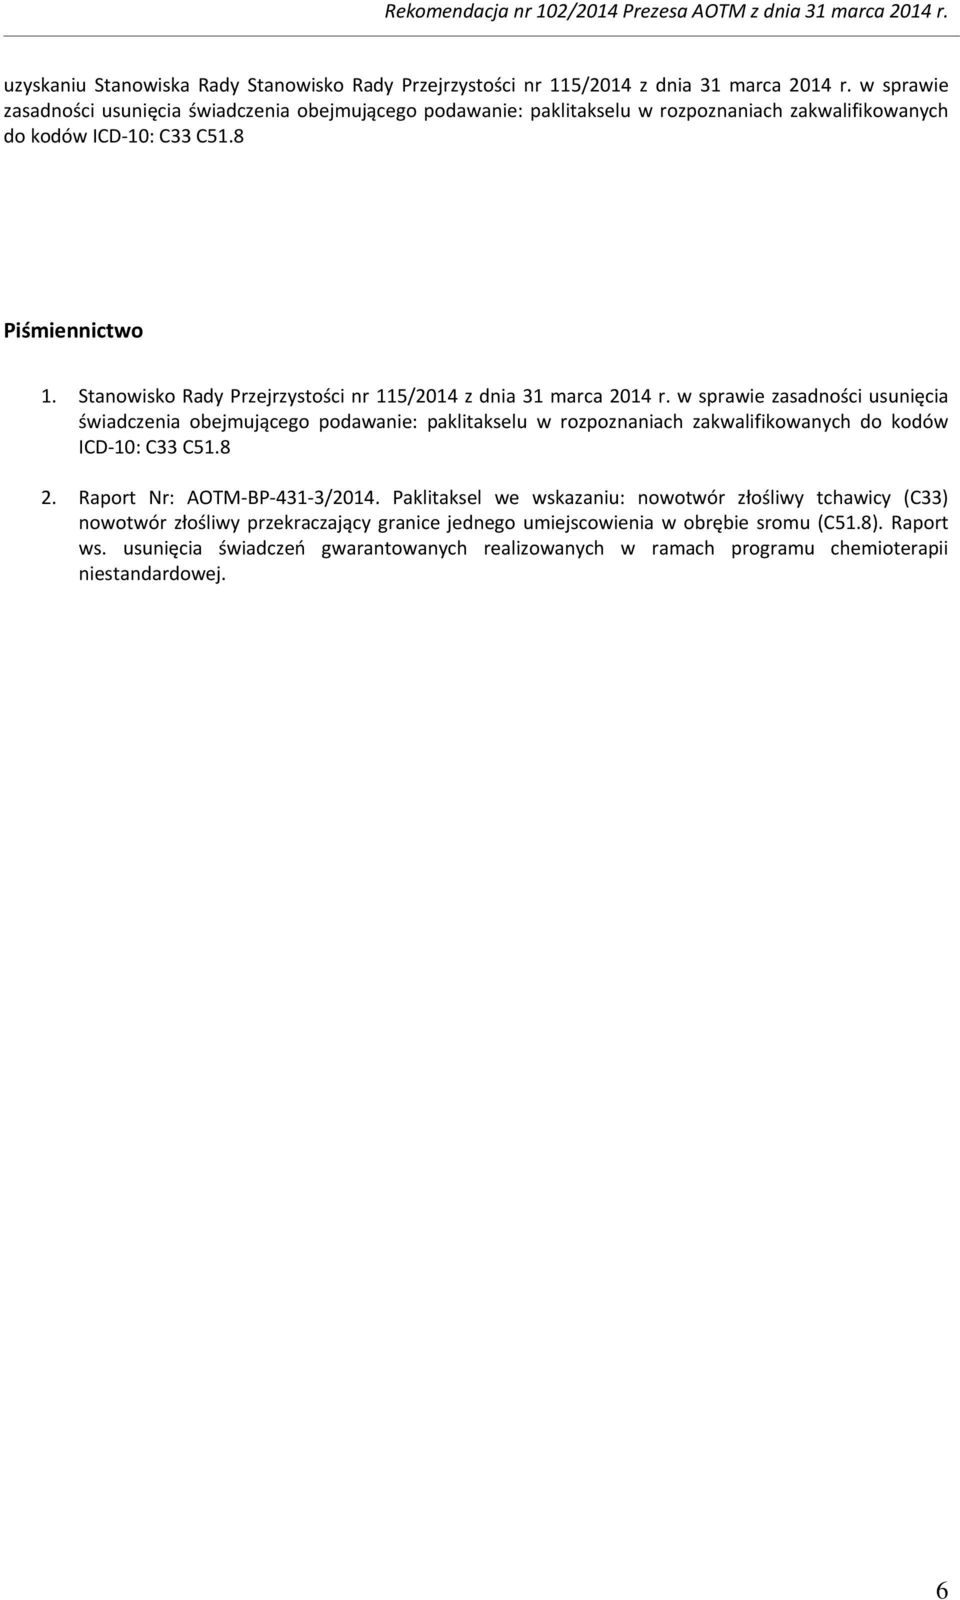 Stanowisko Rady Przejrzystości nr 115/2014 z dnia 31 marca 2014 r.